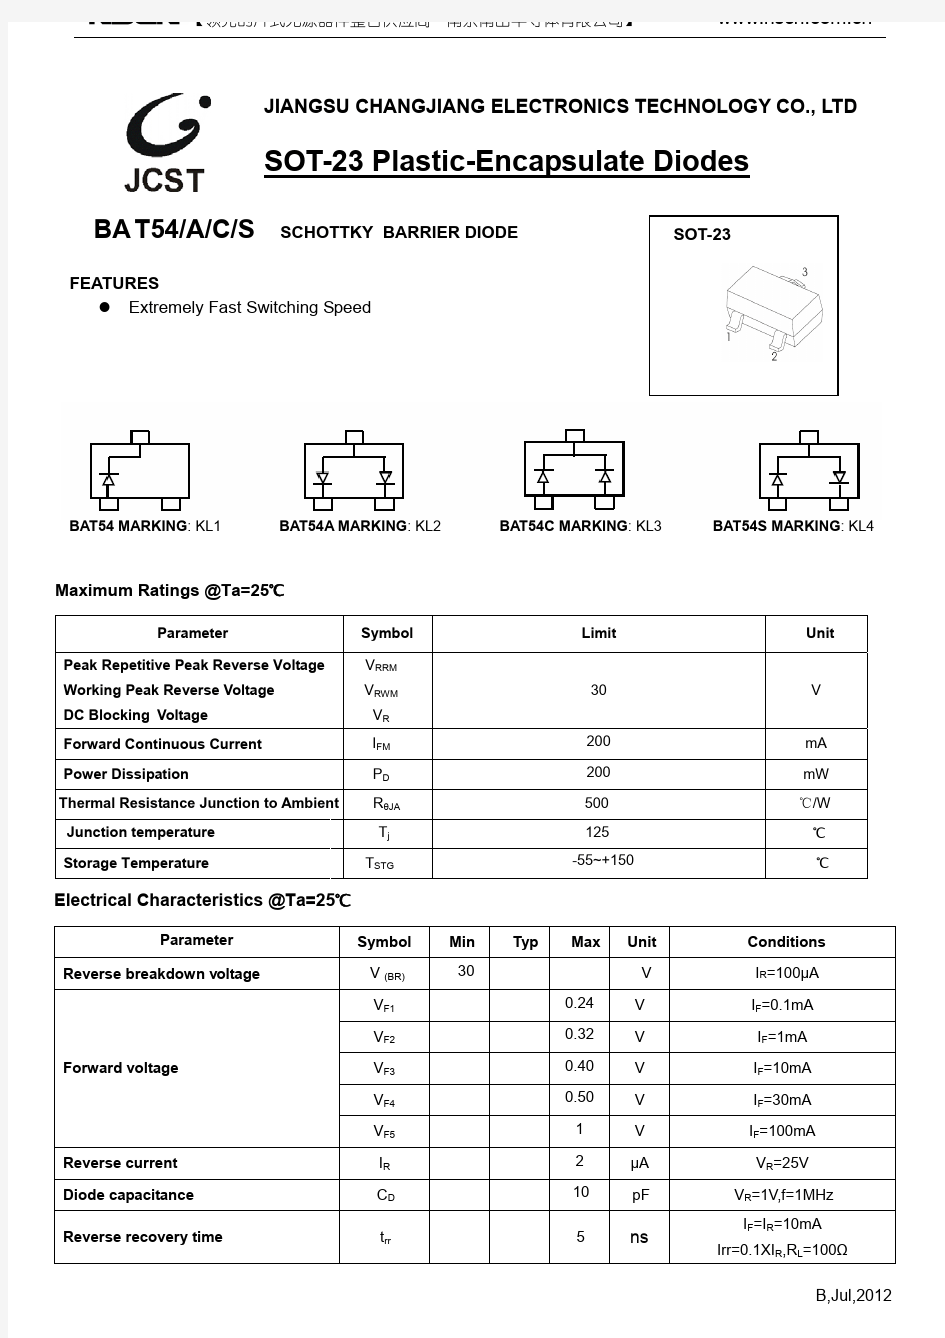 BAT54C 打标KL3肖特基二极管选型手册